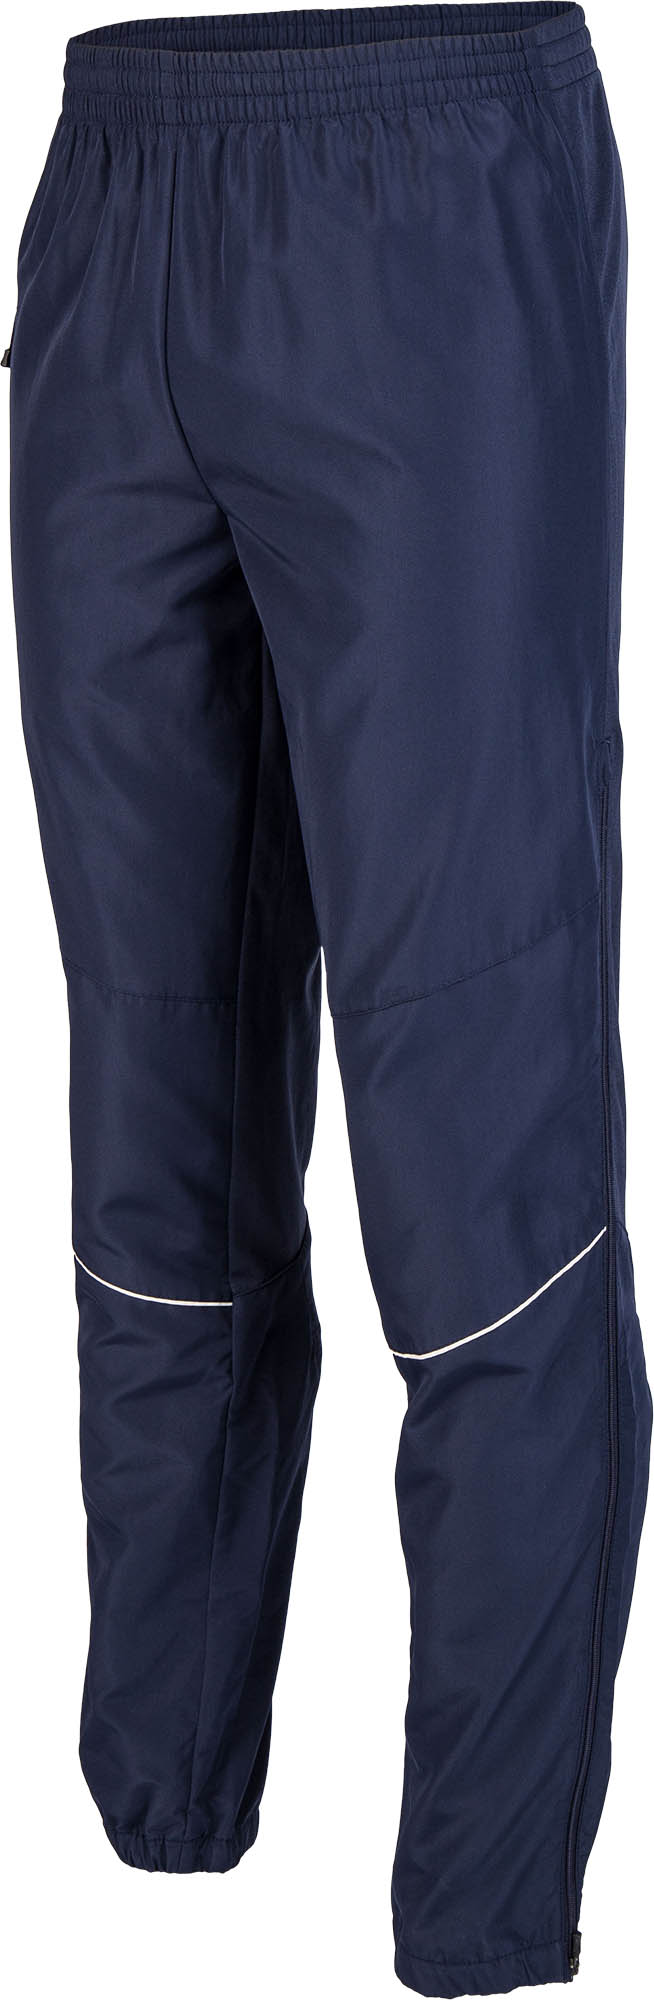 Pánské běžkařské kalhoty